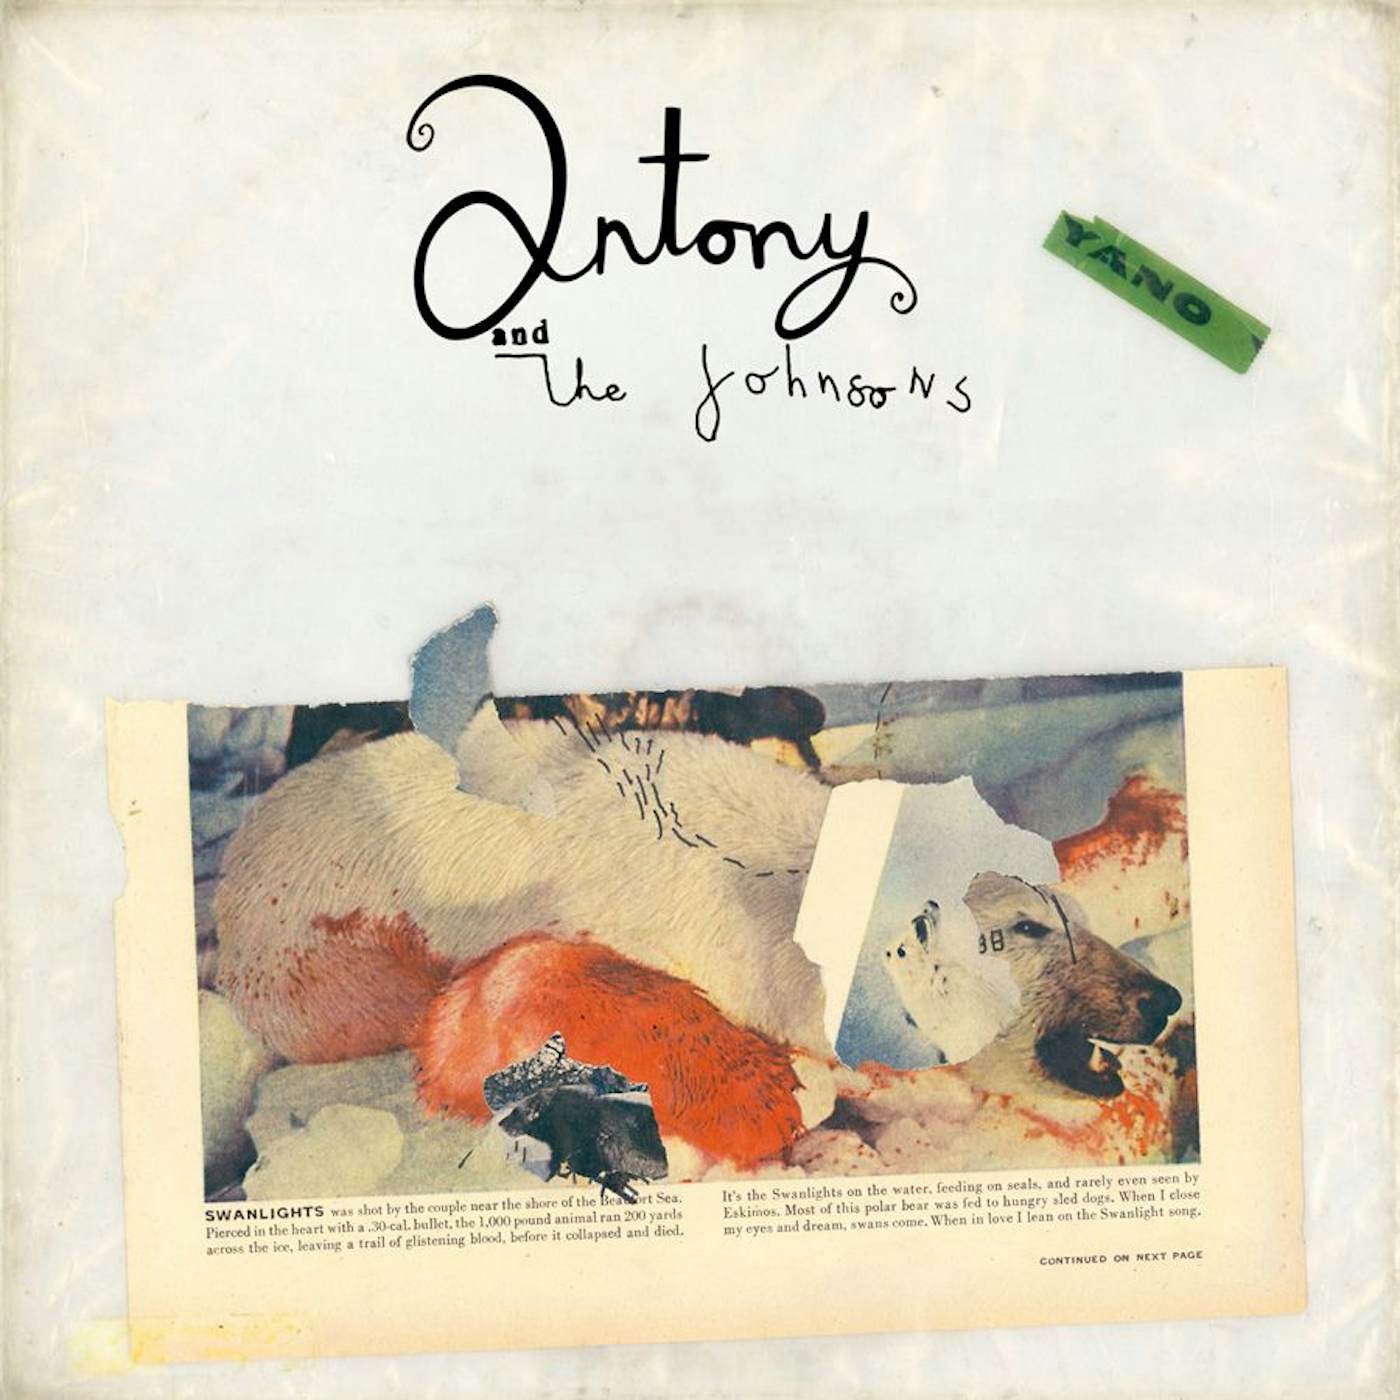 Antony and the Johnsons Swanlights Vinyl Record